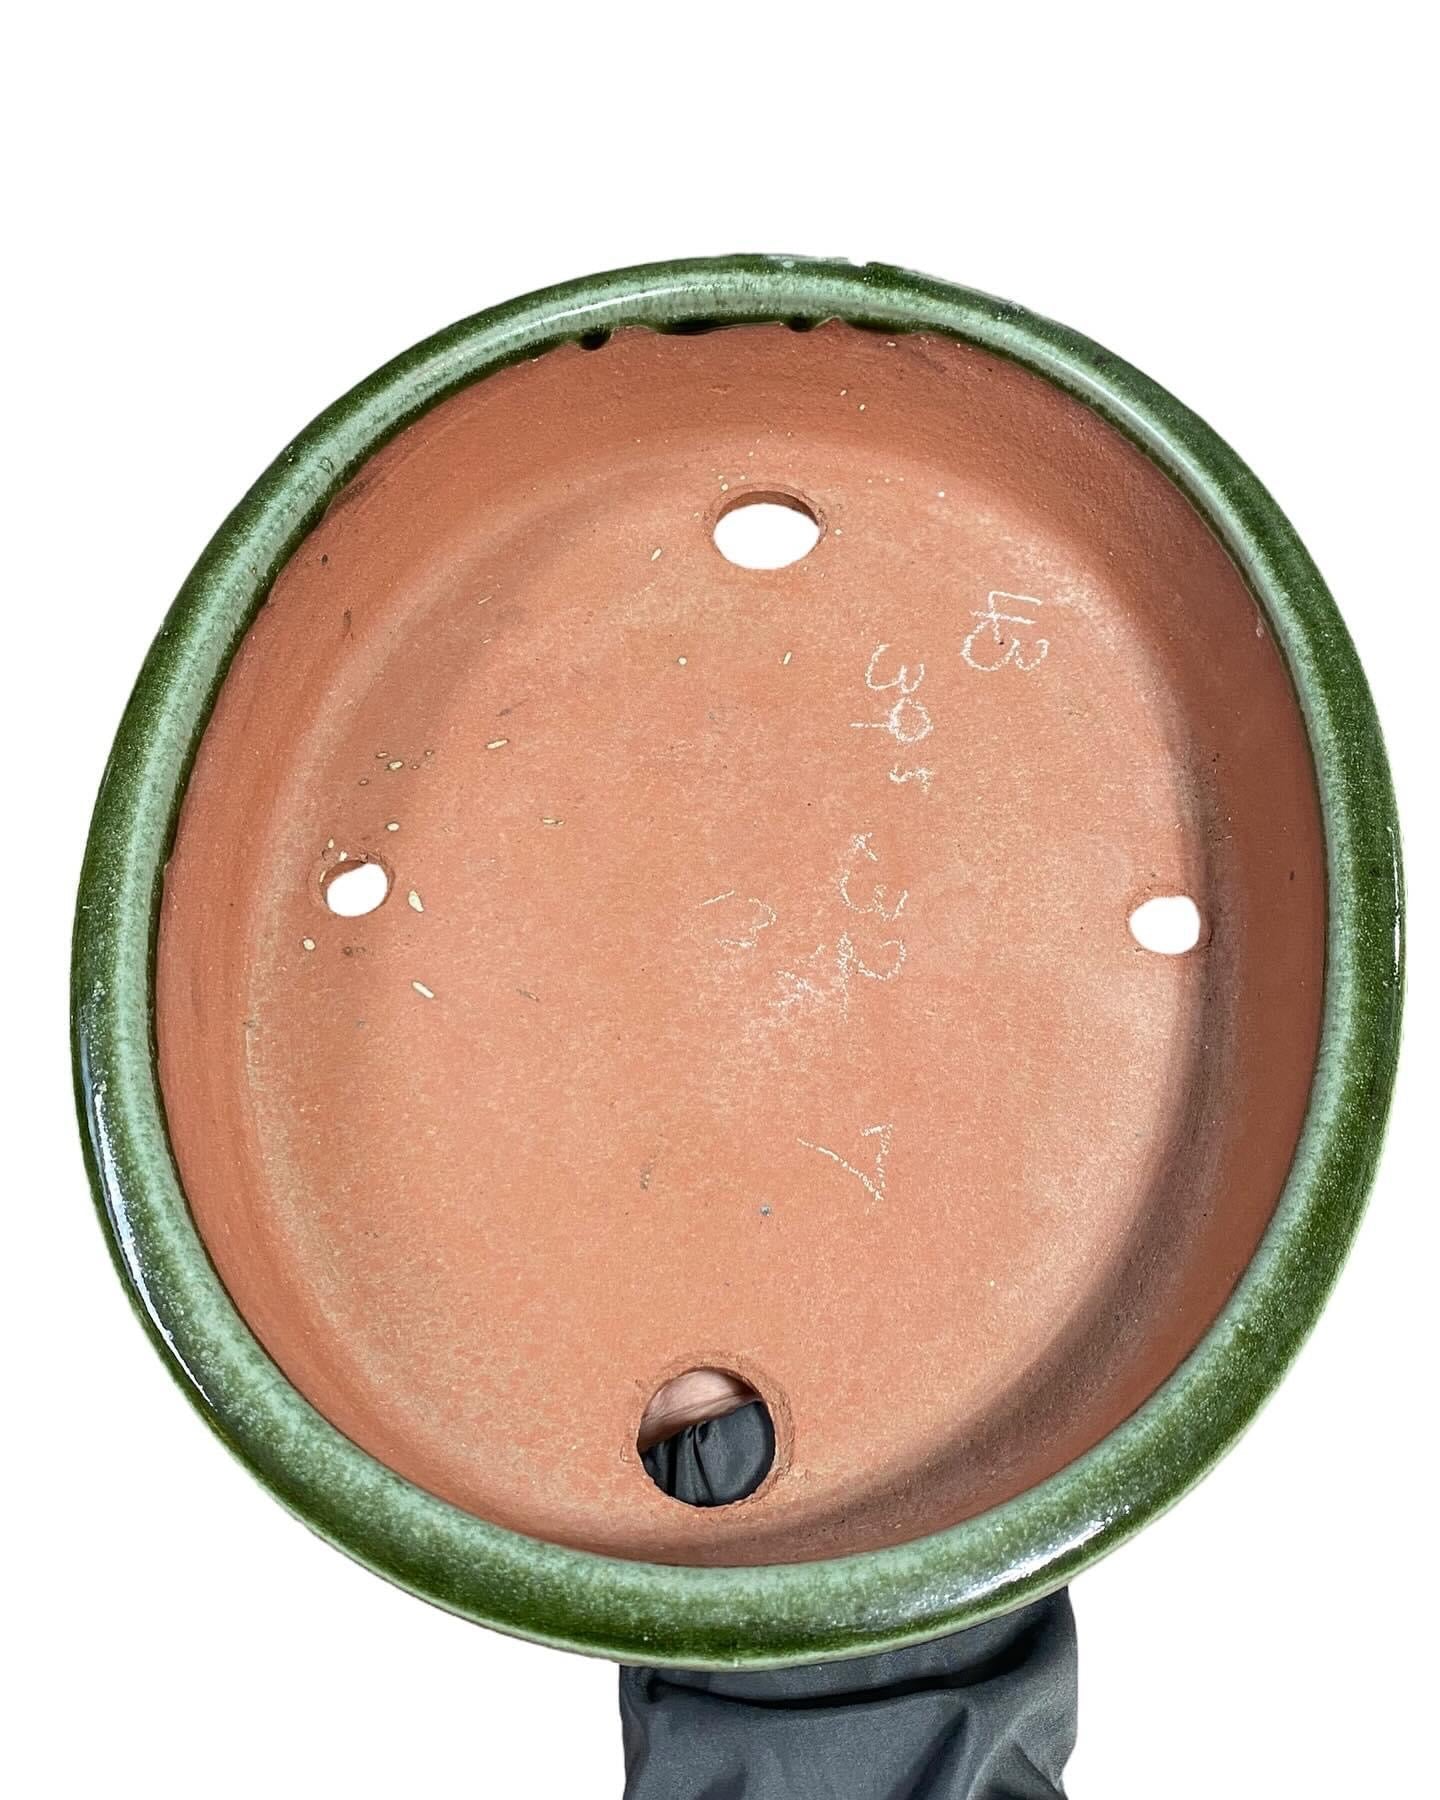 Yozan - Huge and Beautifully Glazed Bonsai Pot (15-5/8 wide)